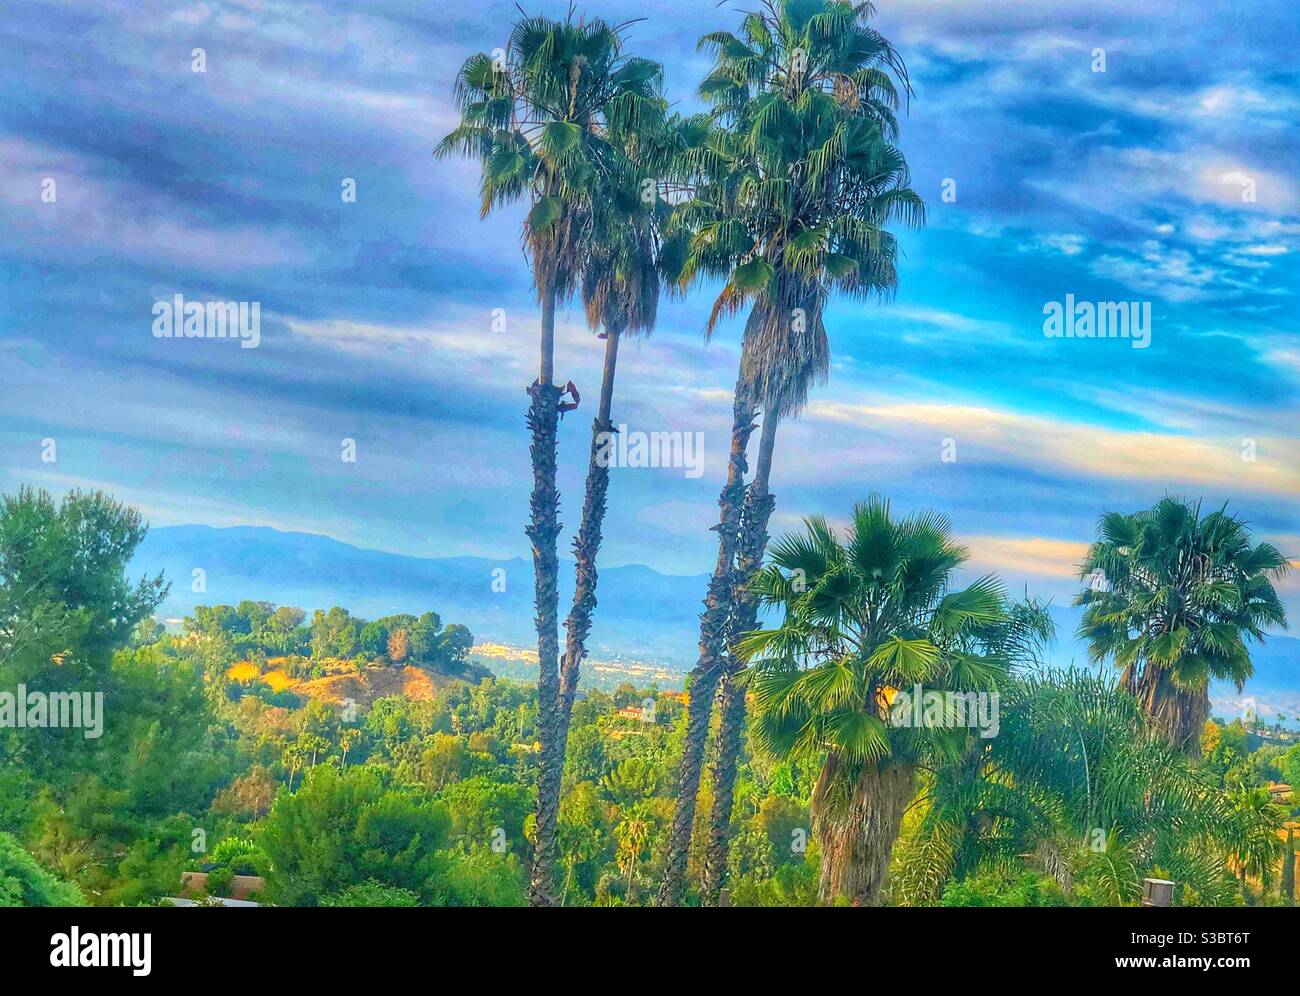 Vue idyllique vers la vallée de San Fernando depuis les collines de Tarzana, CA, USA, qui a été nommé par l'auteur de Tarzan histoires, Edgar Rice Burroughs. Banque D'Images